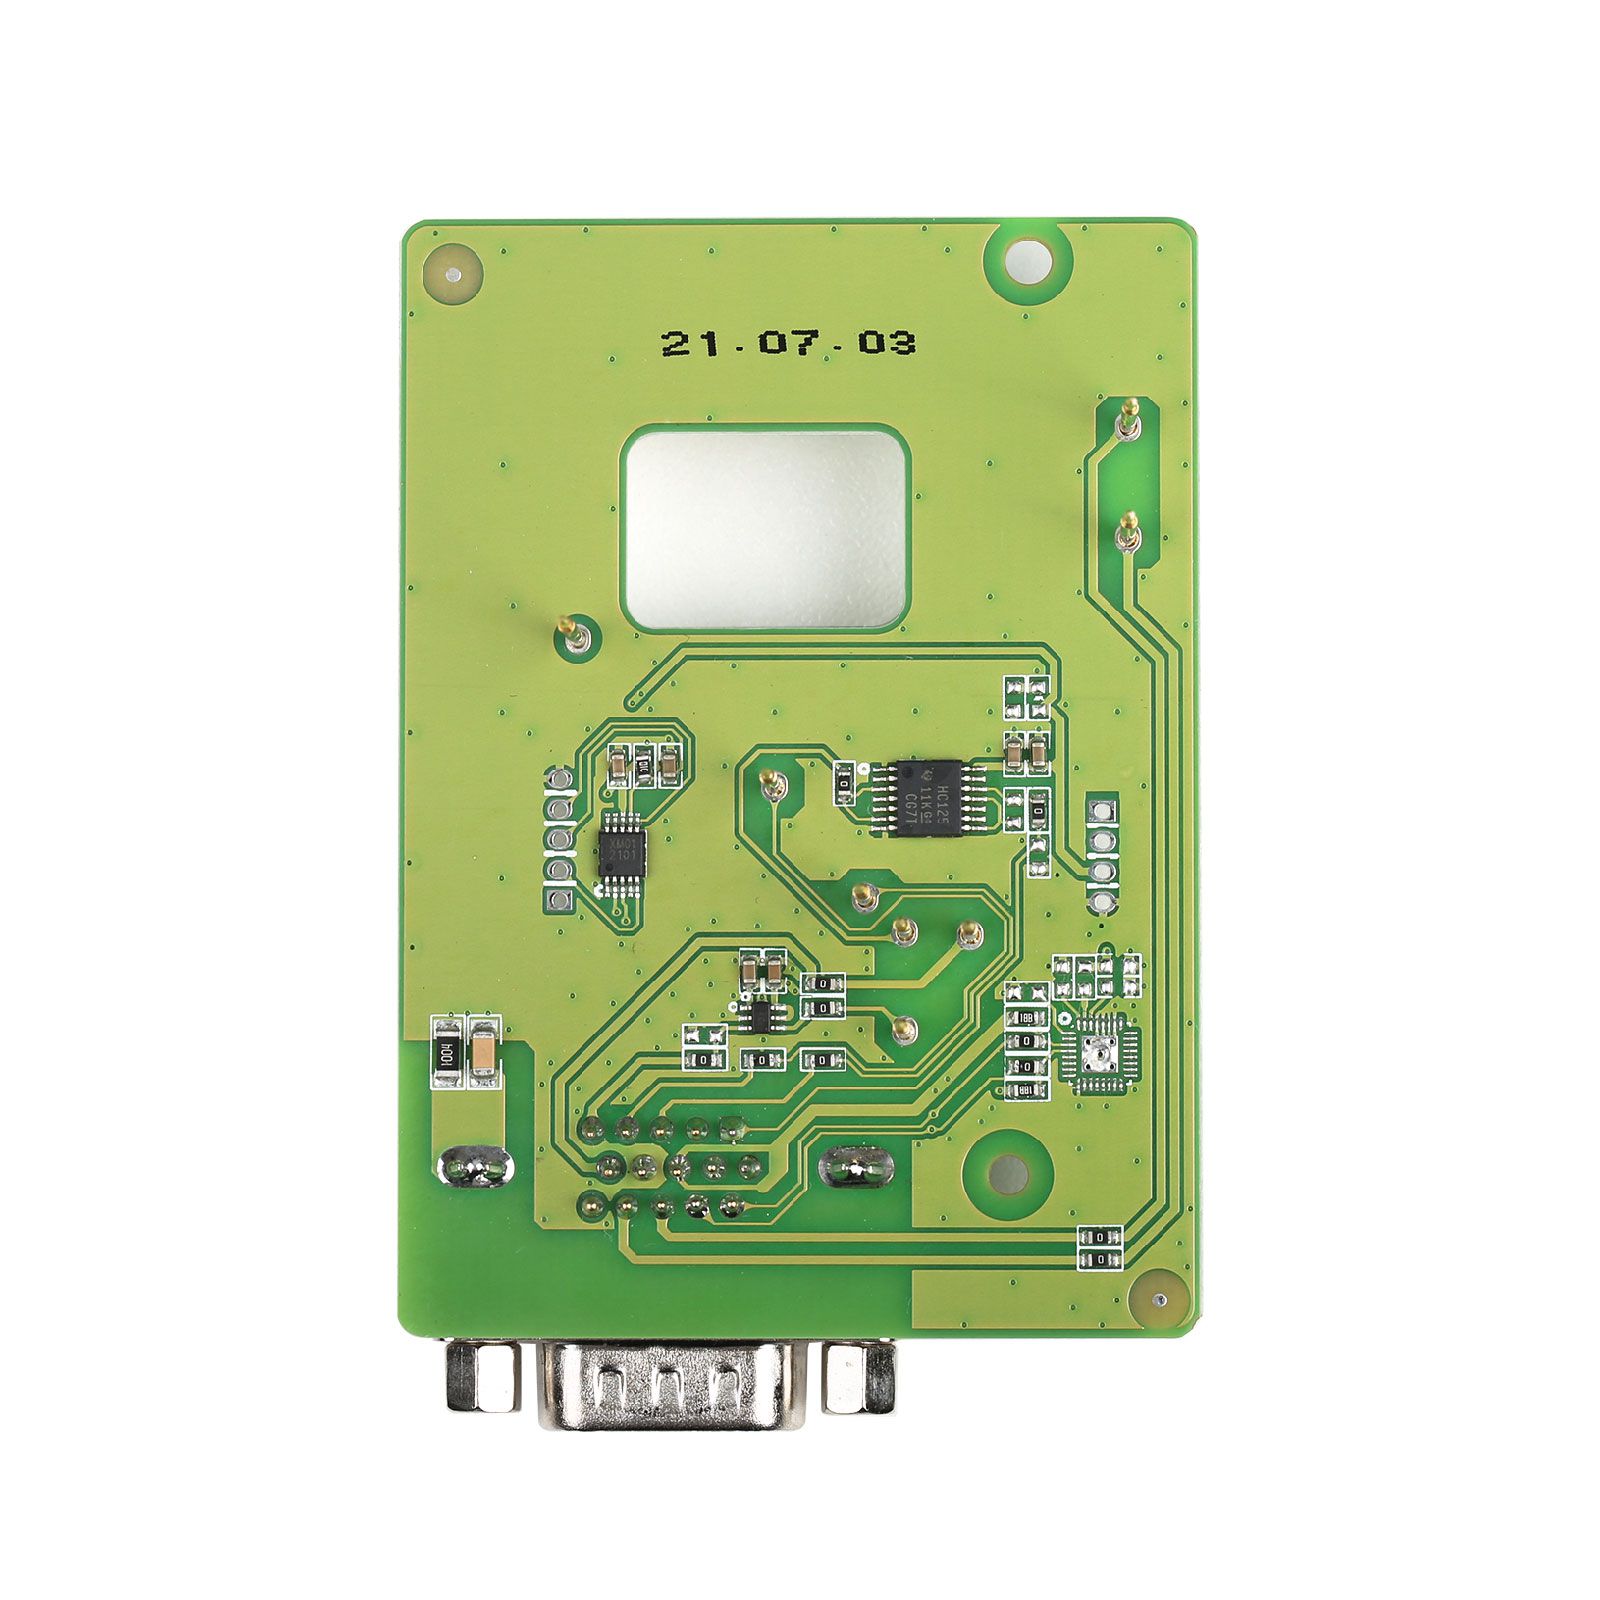 El conector xhorse xdnp11 cas3 / cas3 + BMW sin soldadura se utiliza con mini prog / keytool plus / vvdi prog